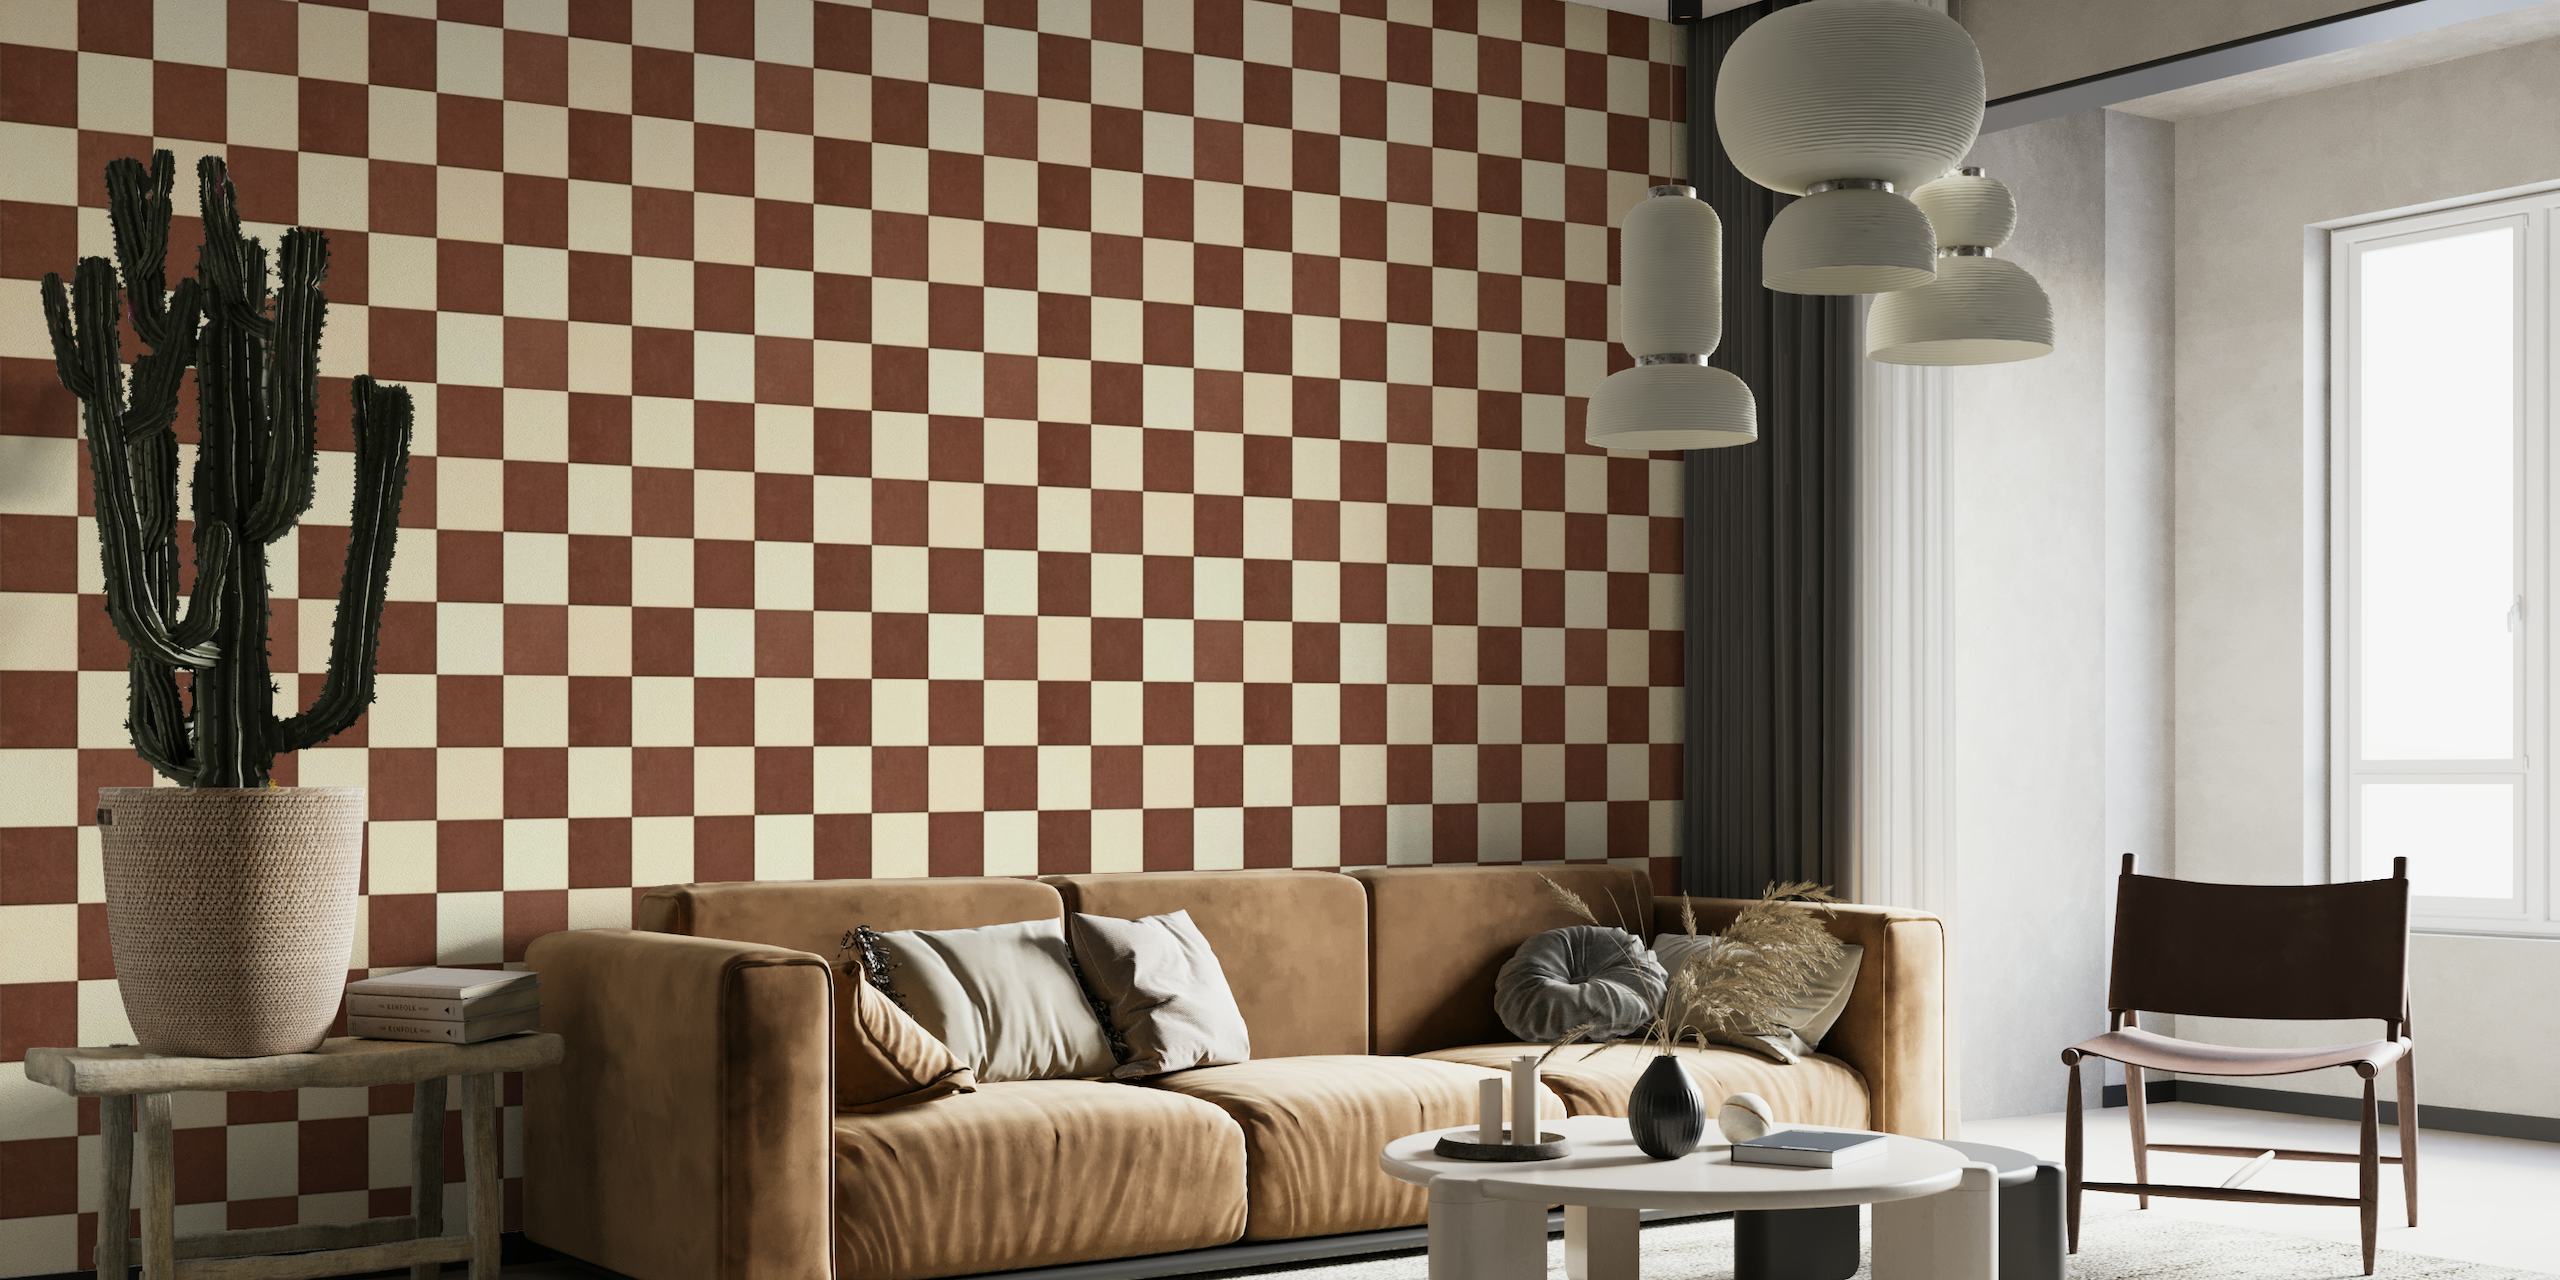 TILES 012 A - Checkerboard wallpaper